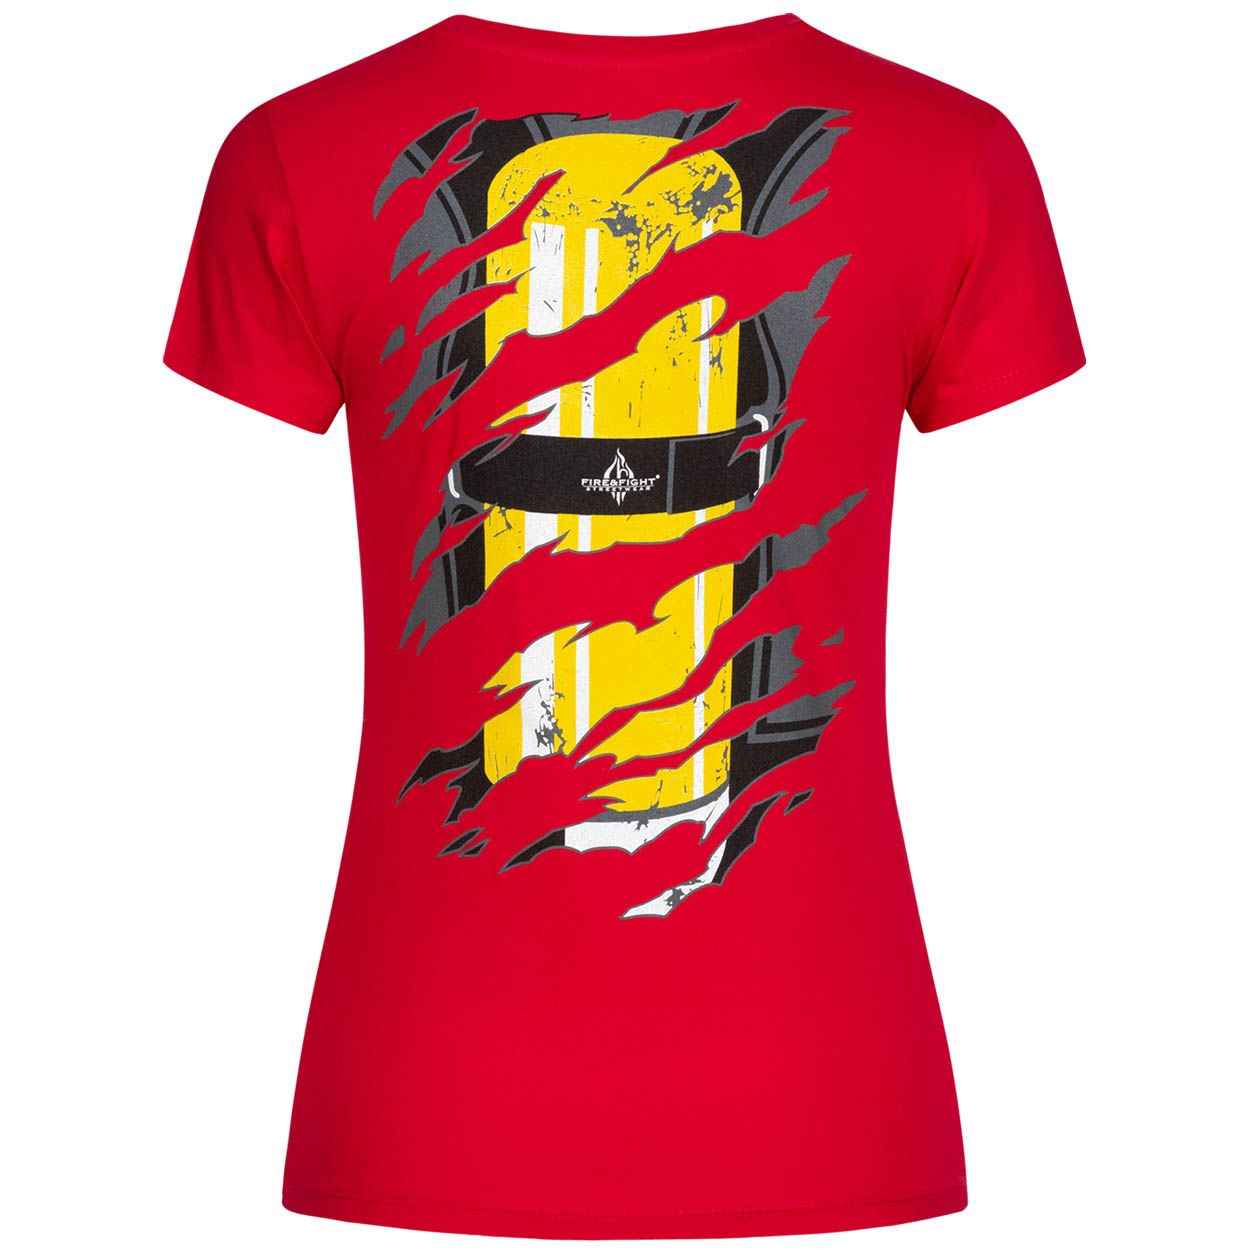 Einsatzkraft® INSIDE - Feuerwehrfrauen T-Shirt rot